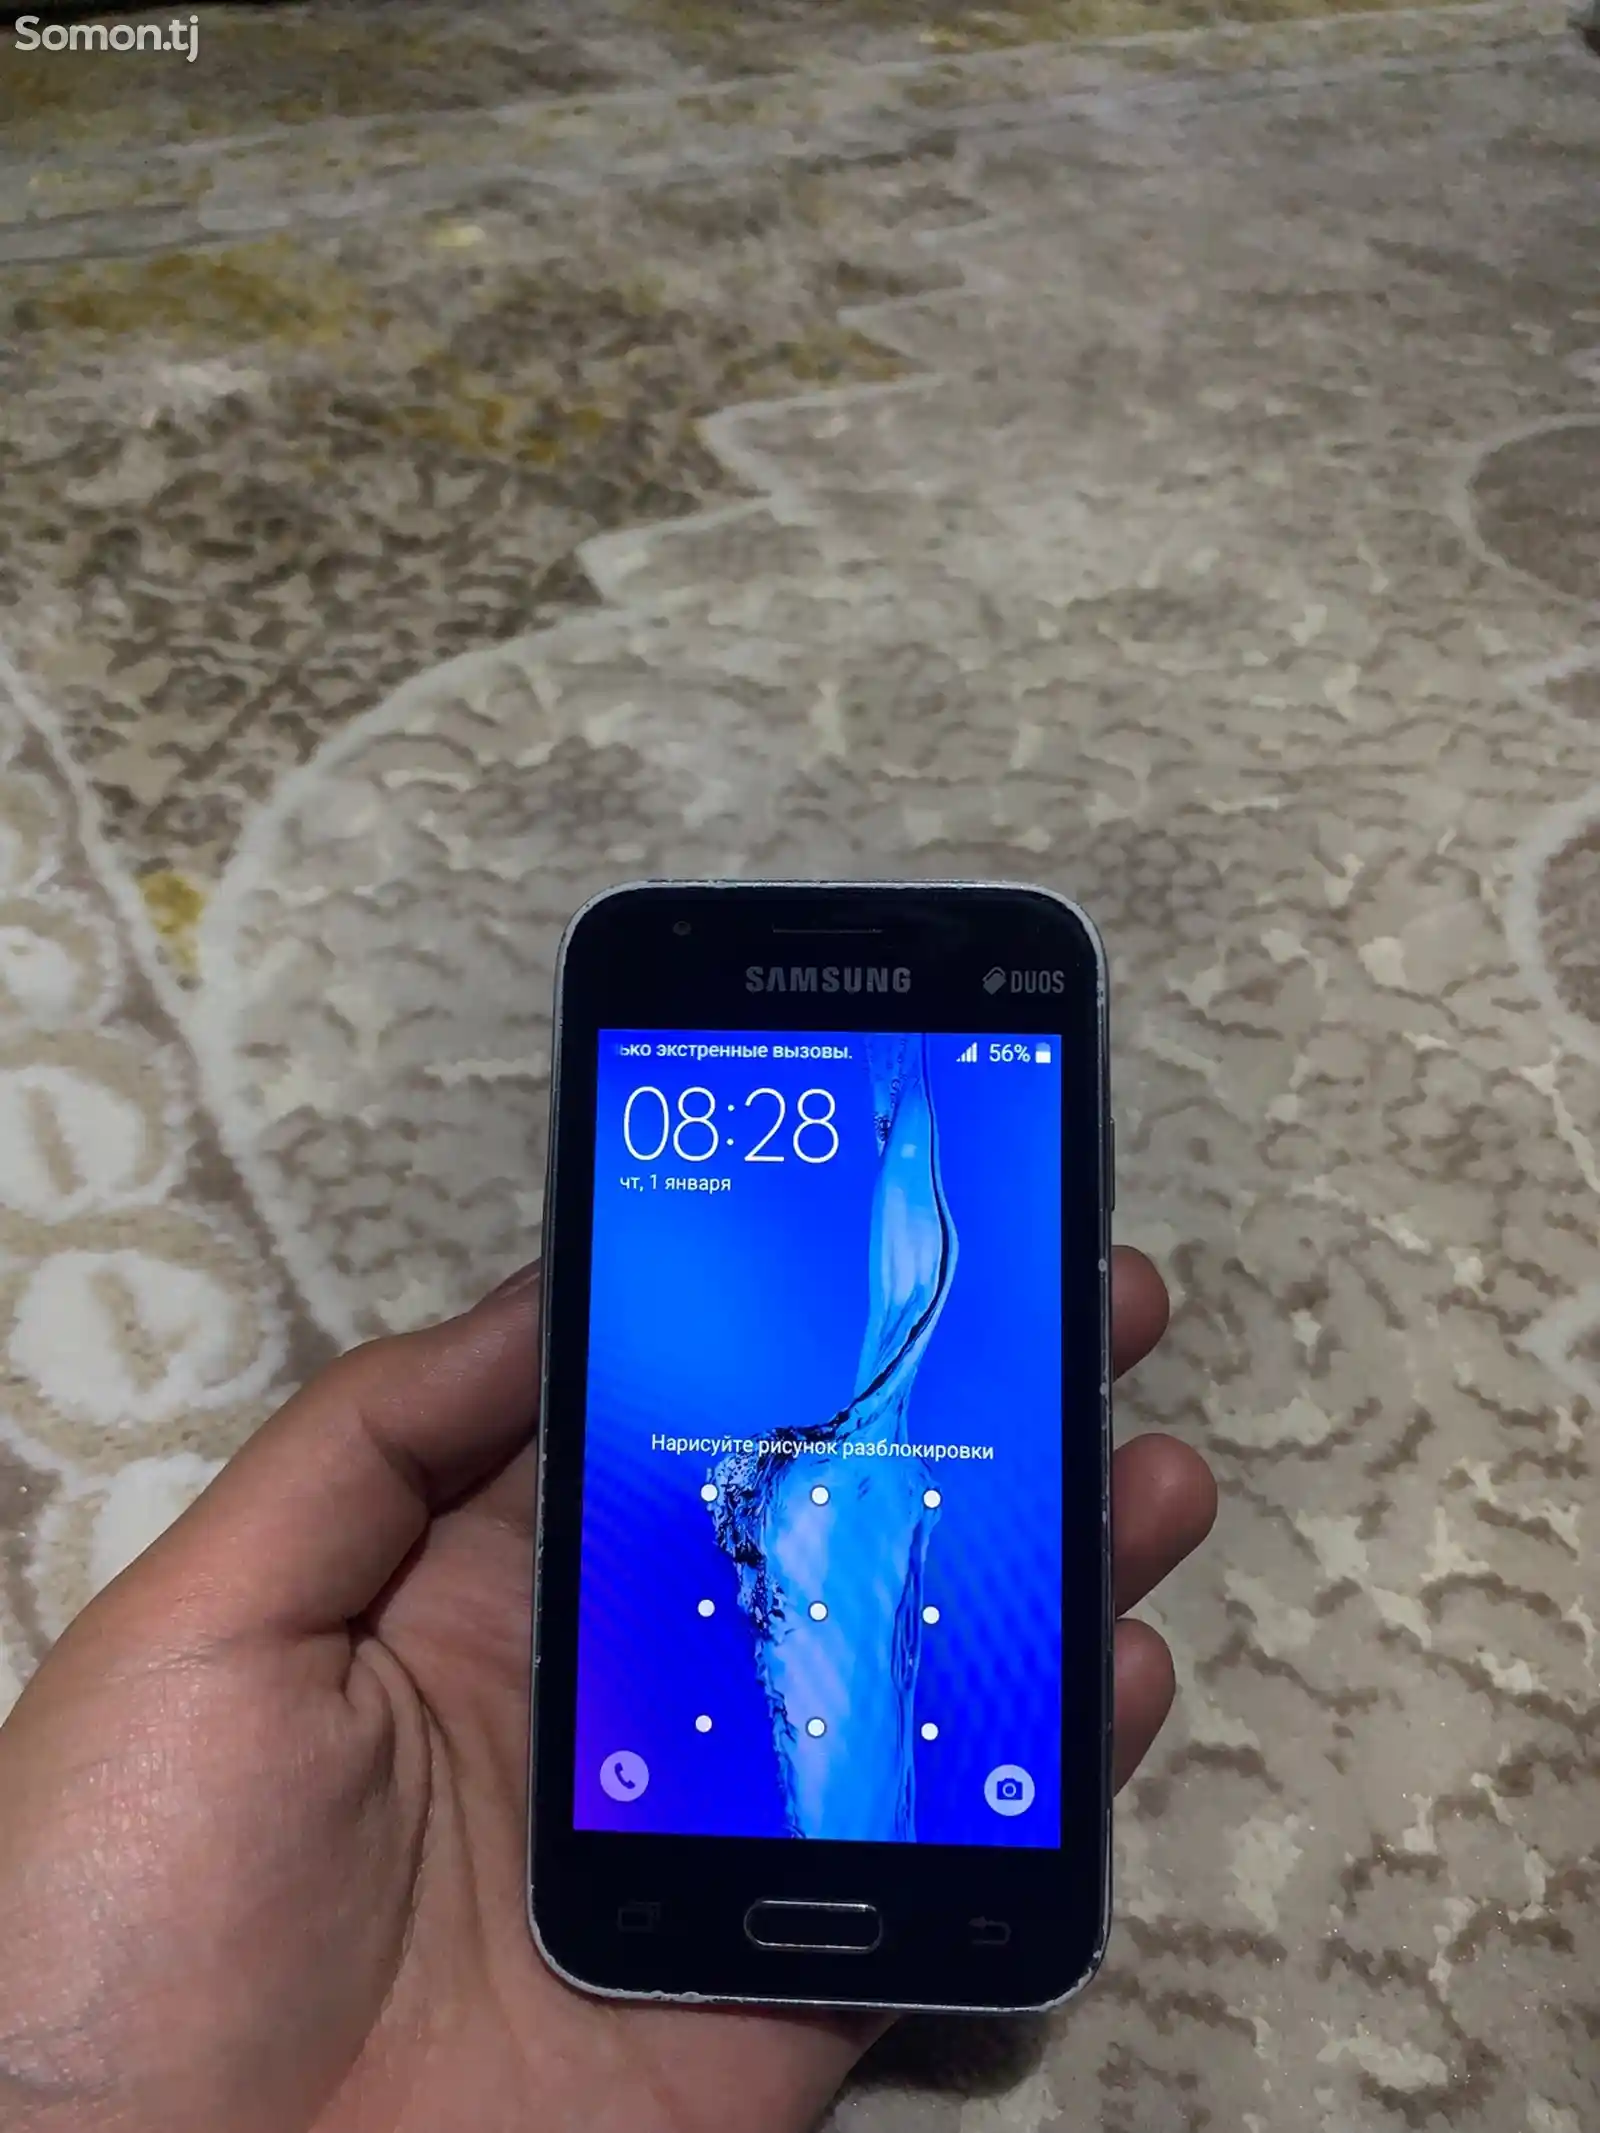 Samsung Galaxy J1 mini-1